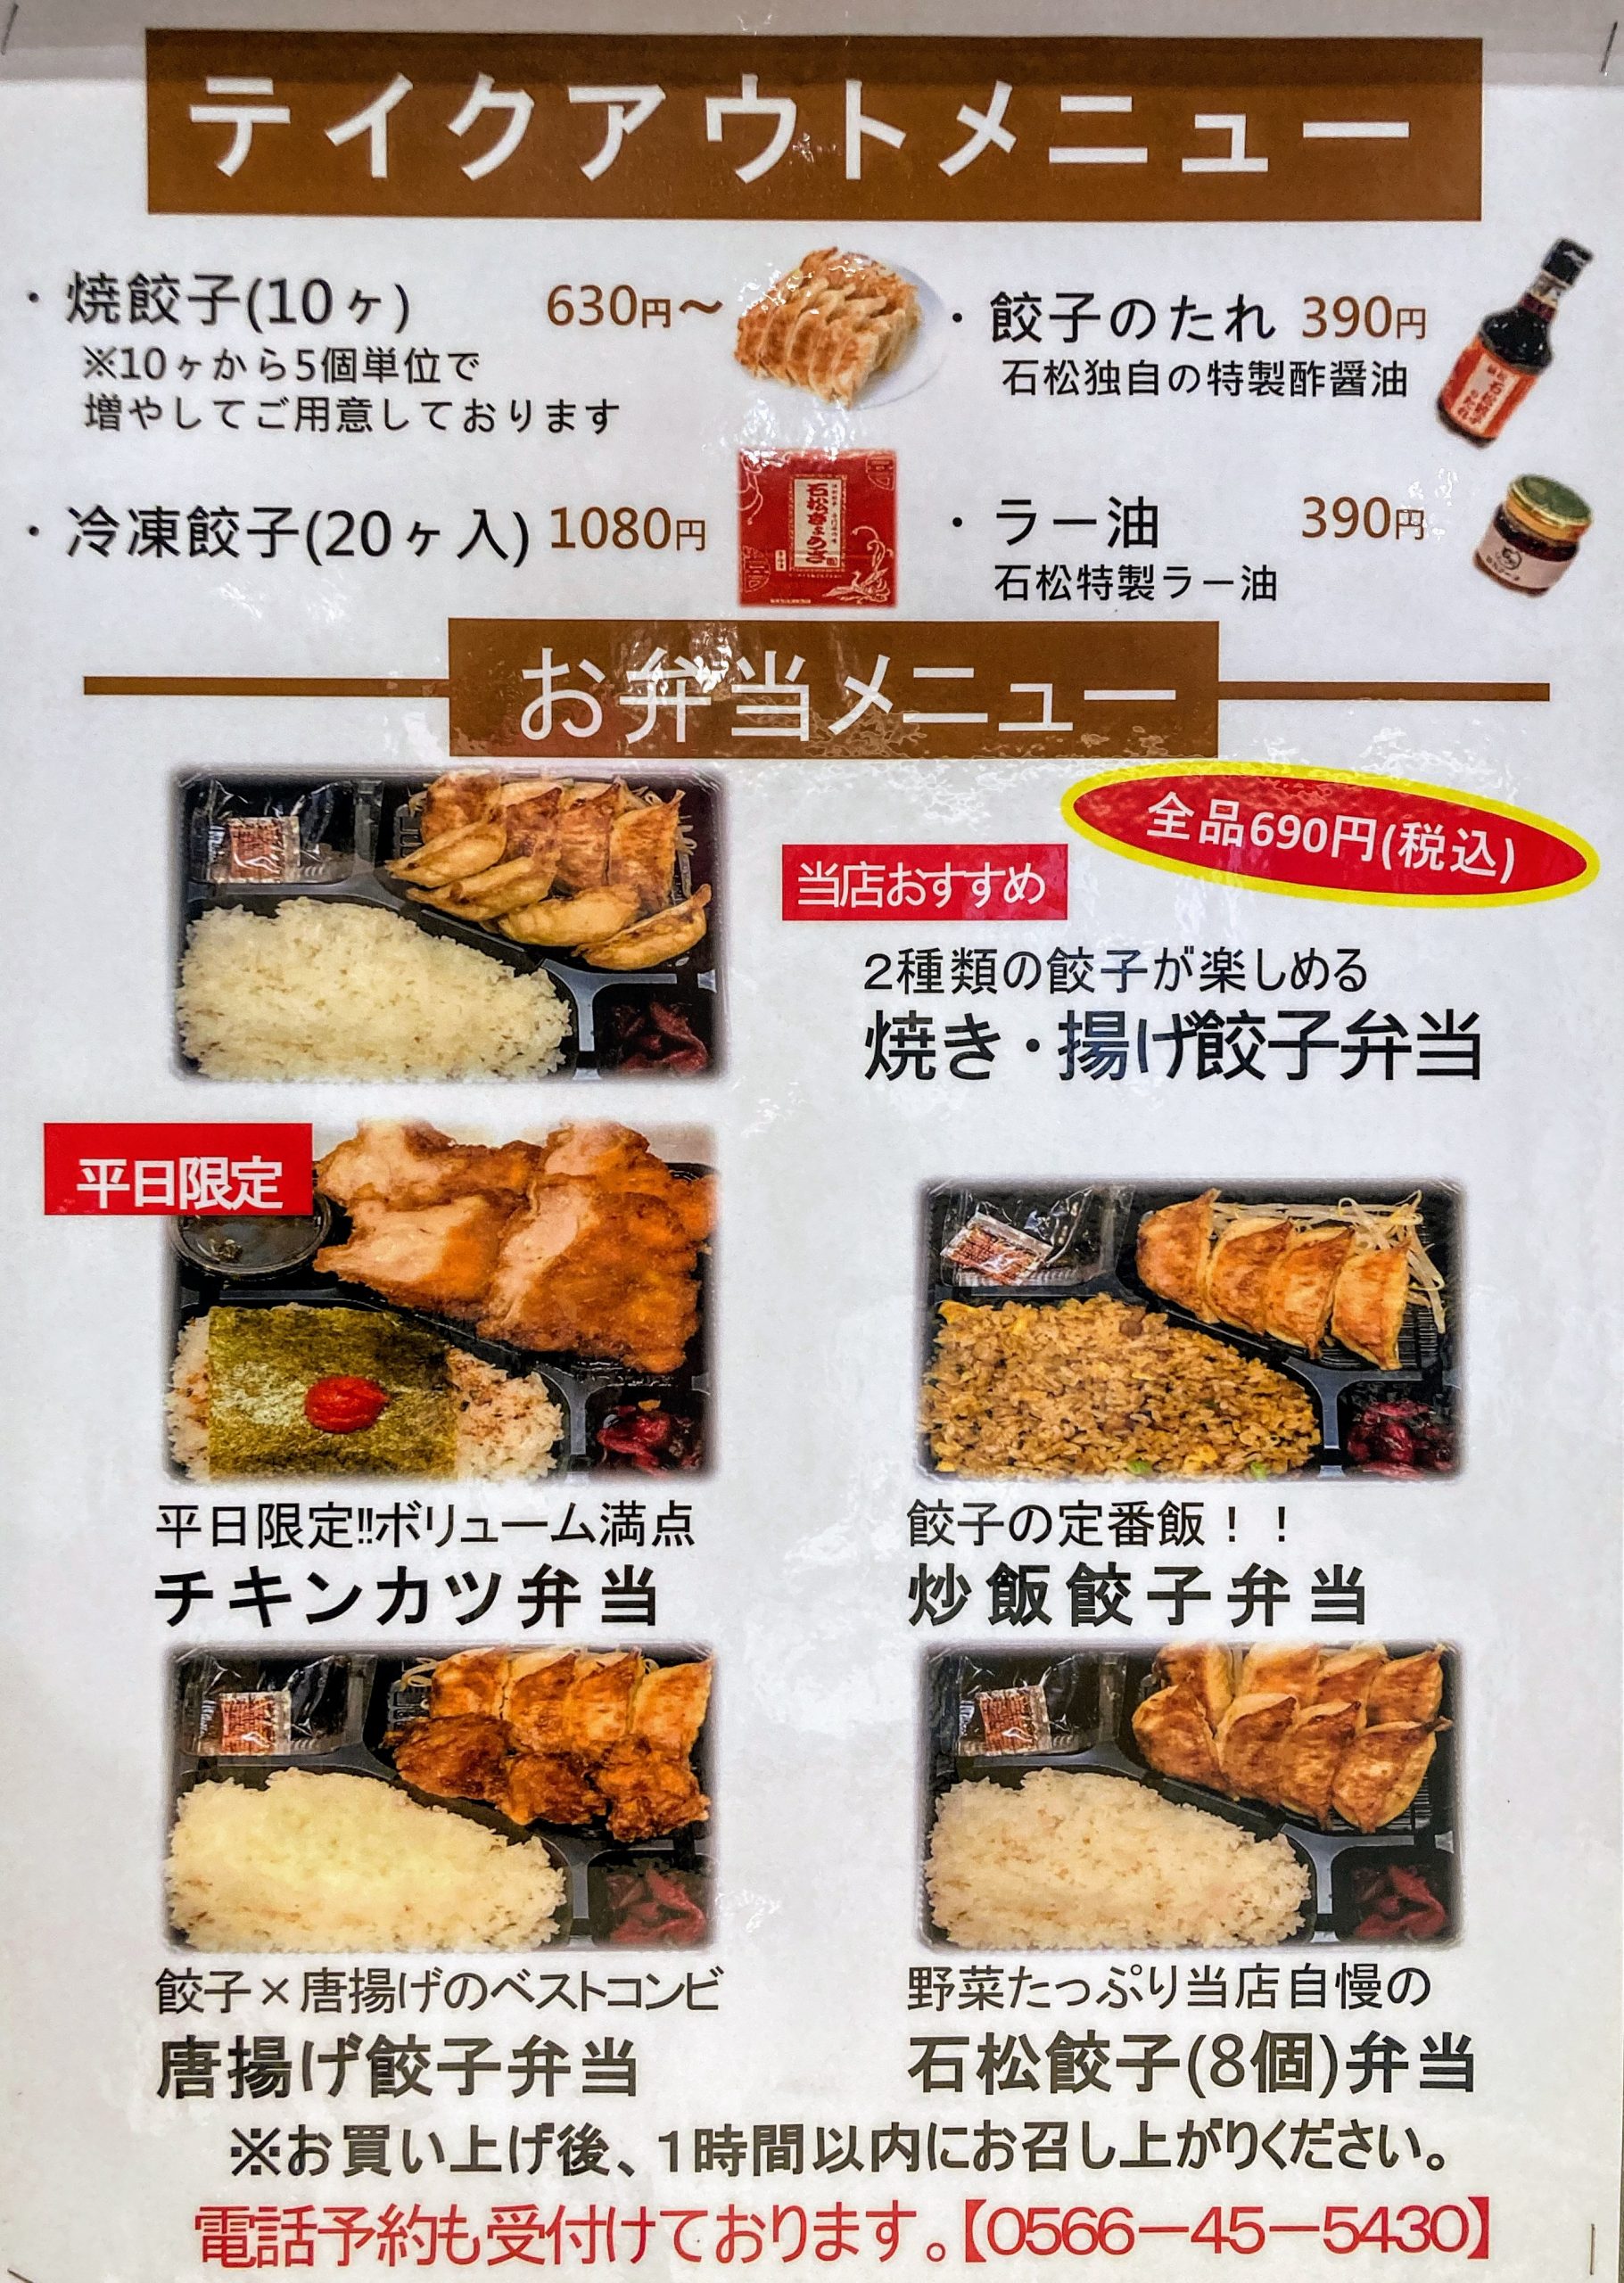 お弁当がお買い求めやすくなりました ブログ 元祖浜松餃子の石松 石松餃子